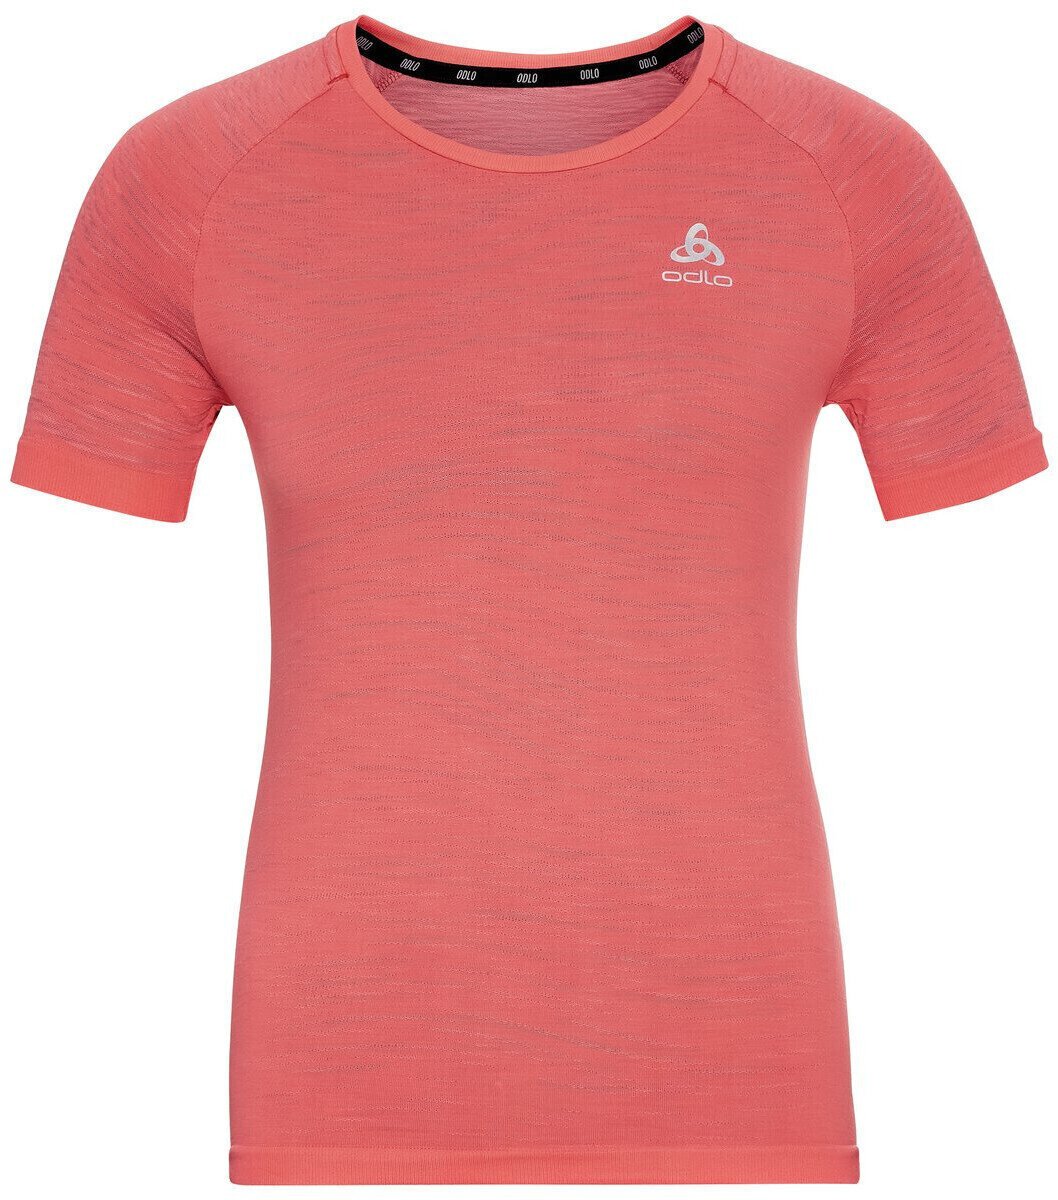 Laufshirt mit Kurzarm
 Odlo Blackcomb Ceramicool T-Shirt Siesta/Space Dye XS Laufshirt mit Kurzarm